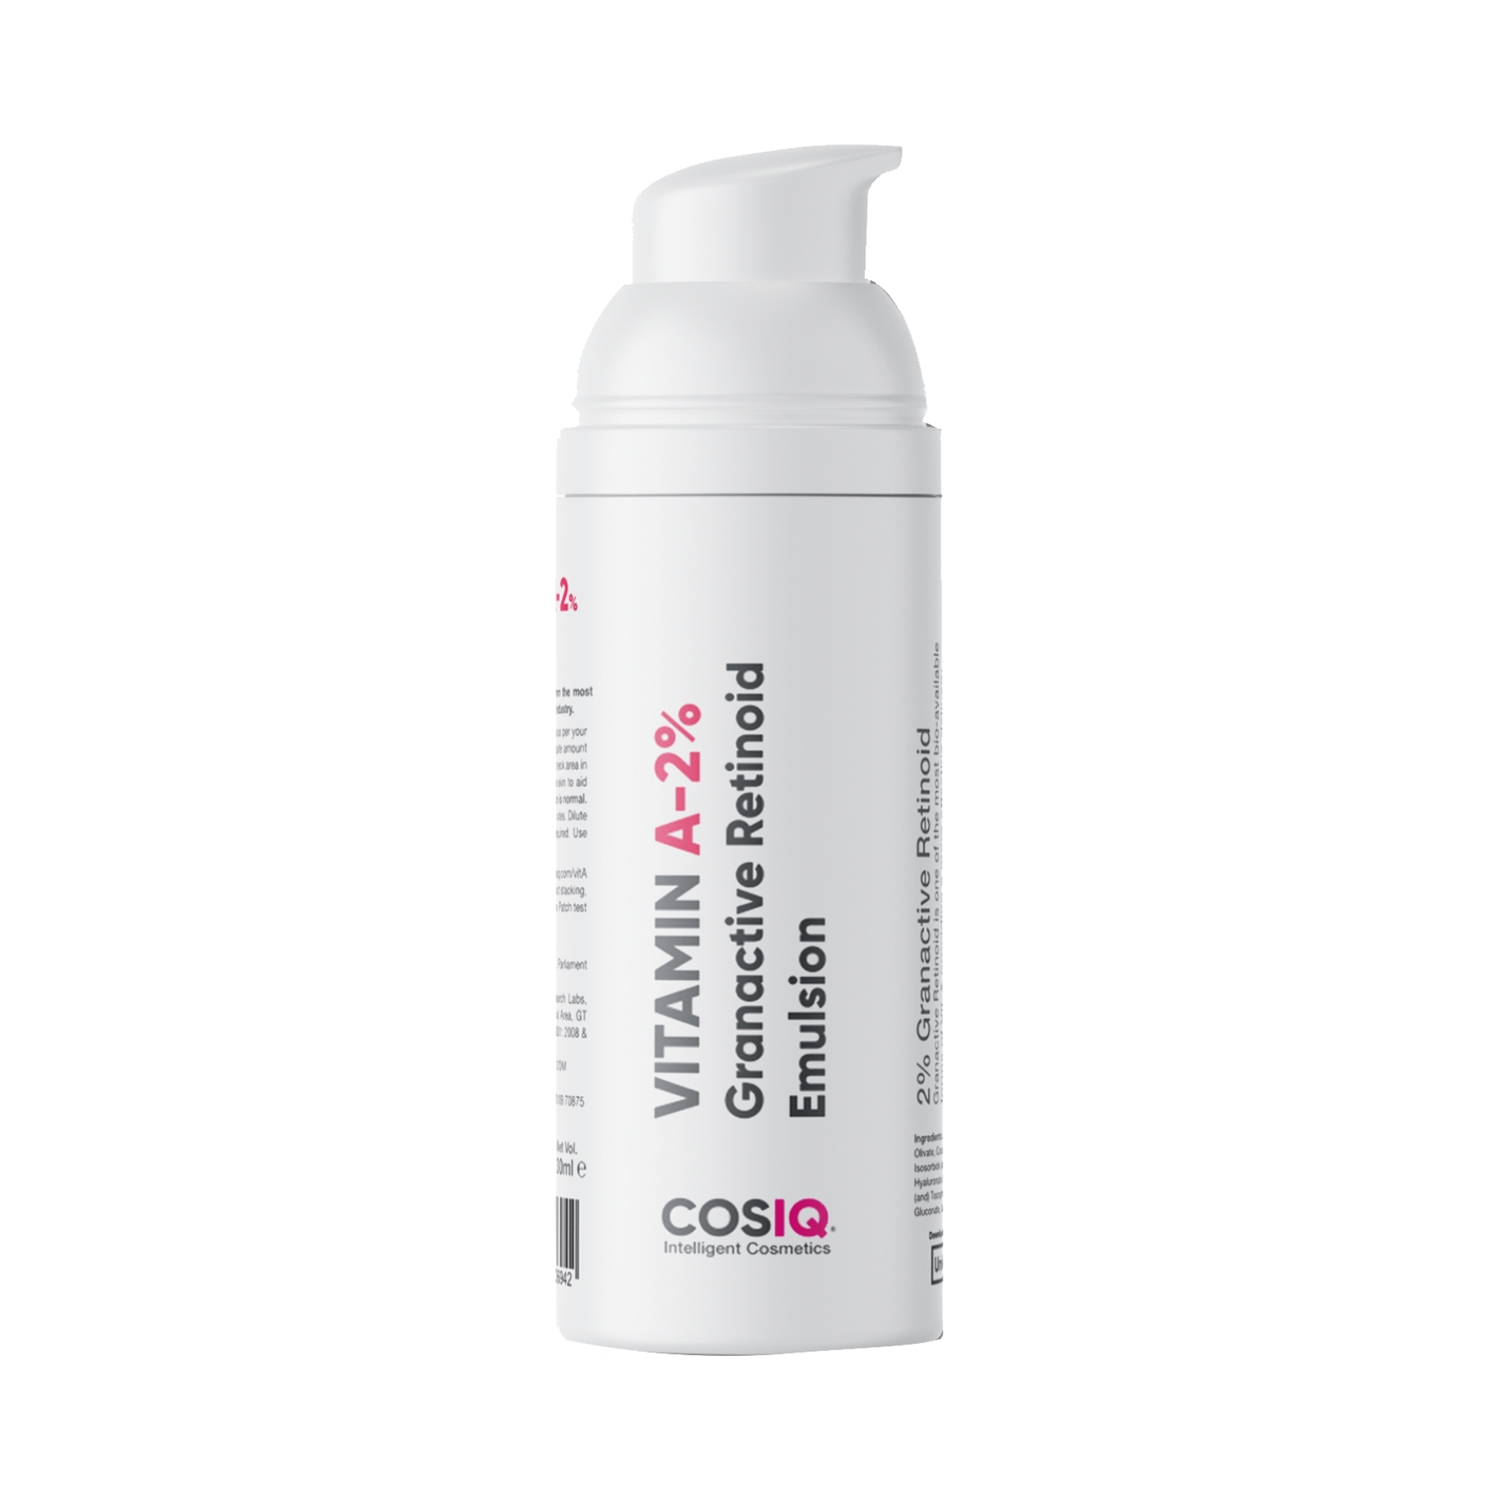 CosIQ | CosIQ Vitamin A-2% Granactive Retinoid Emulsion Face Serum (30ml)